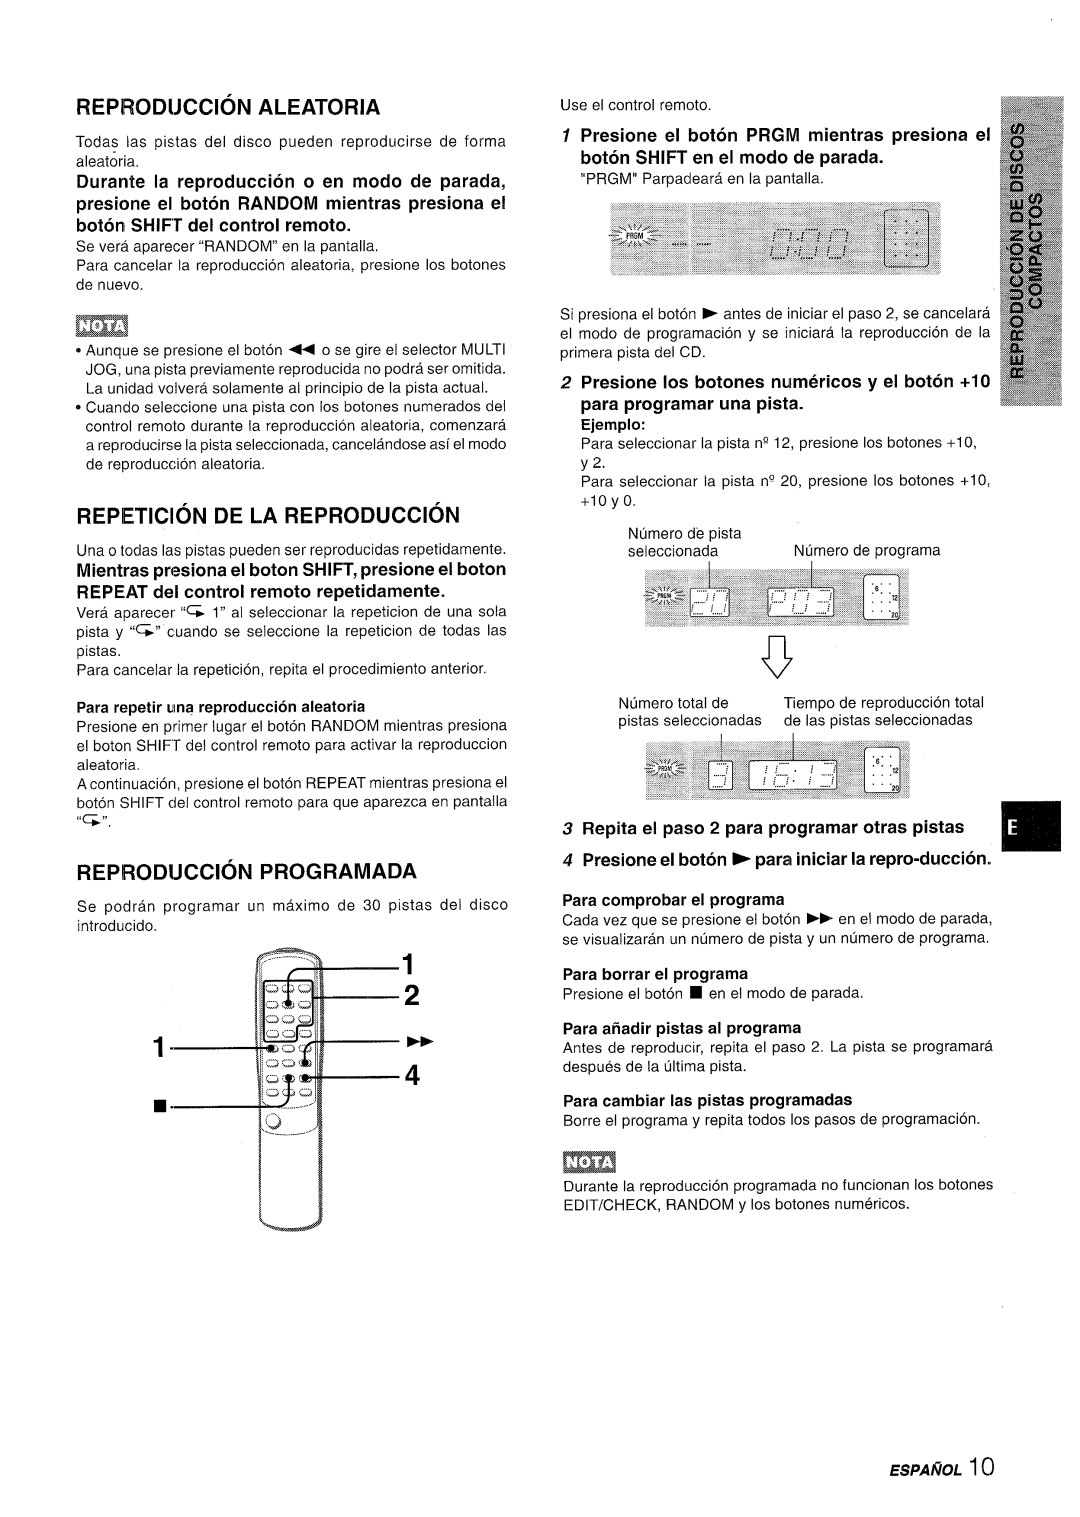 Aiwa XR-M35 manual Reprodijccion Aleatoria, REPETITION DE LA REPRODUCC16N, Reprod!Jccion Programada, en modo de 